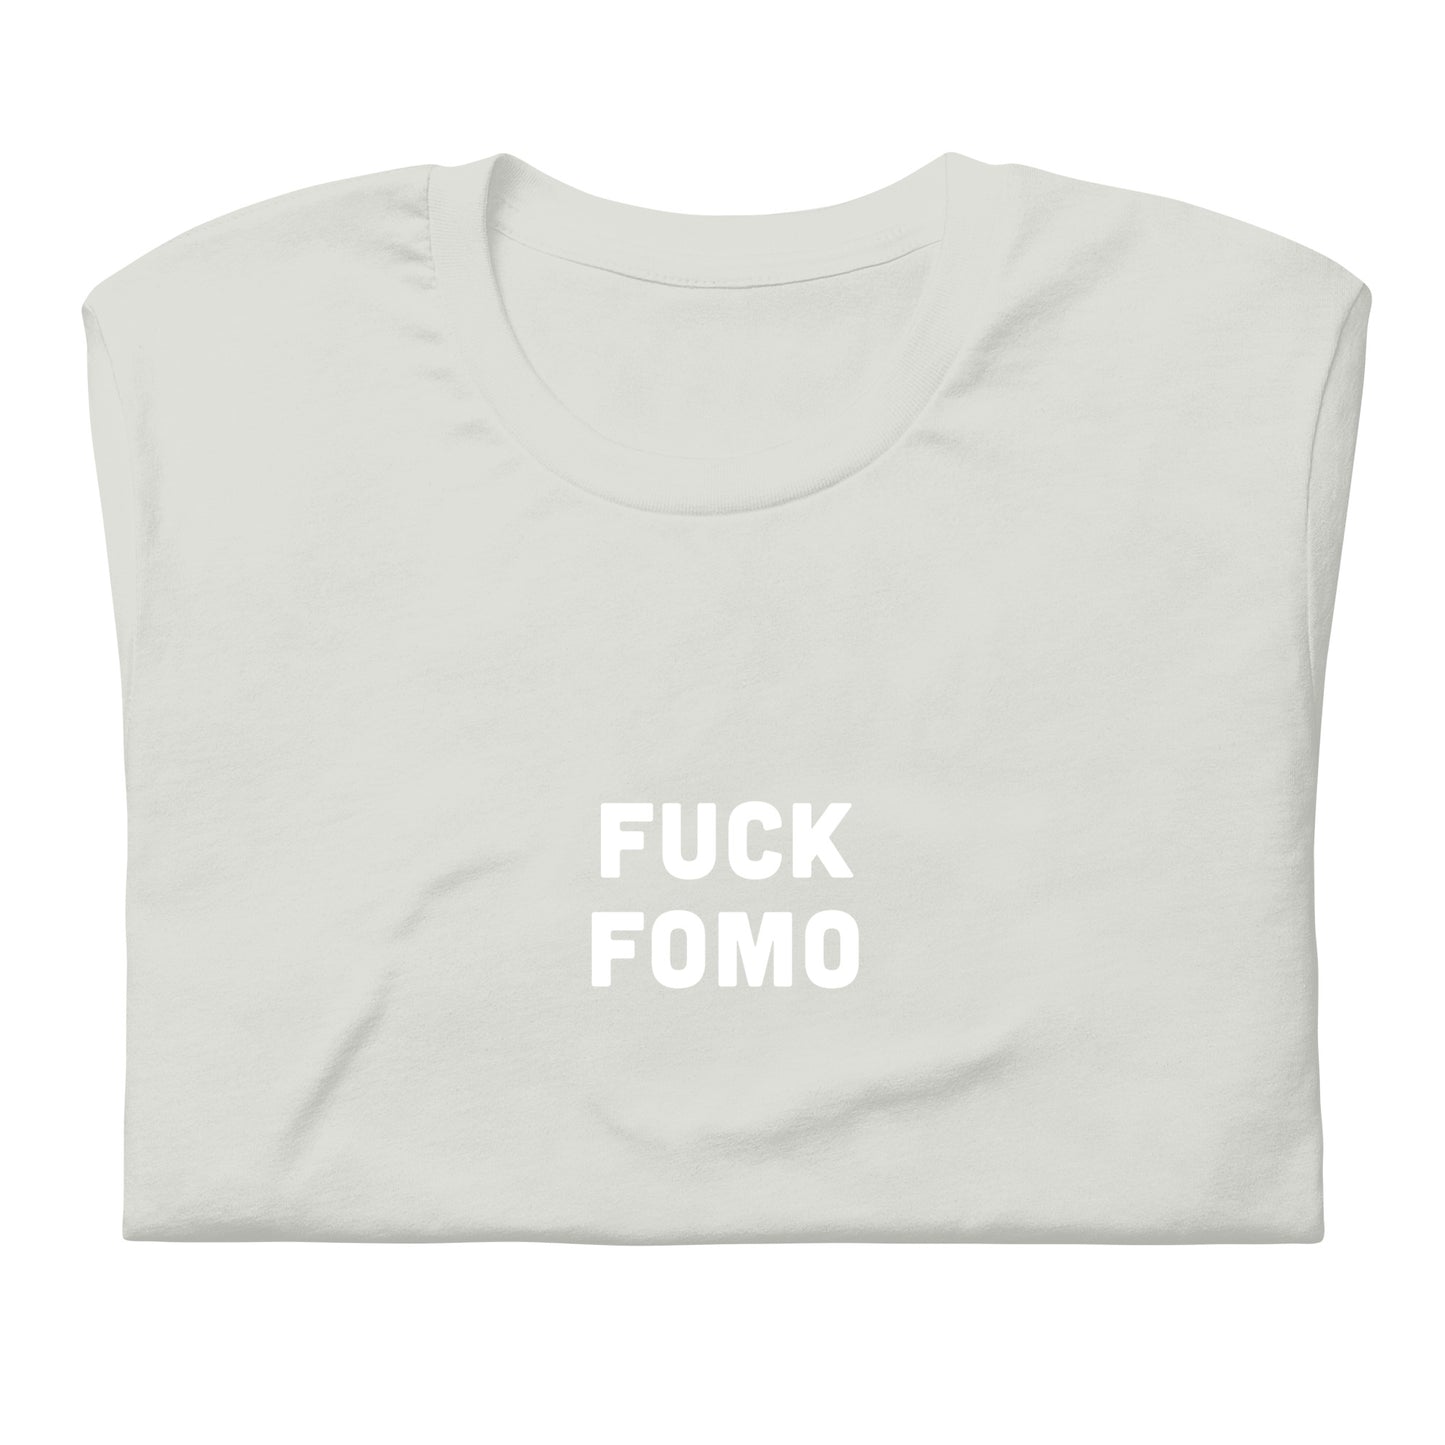 Fuck Fomo T-Shirt Size 2XL Color Asphalt